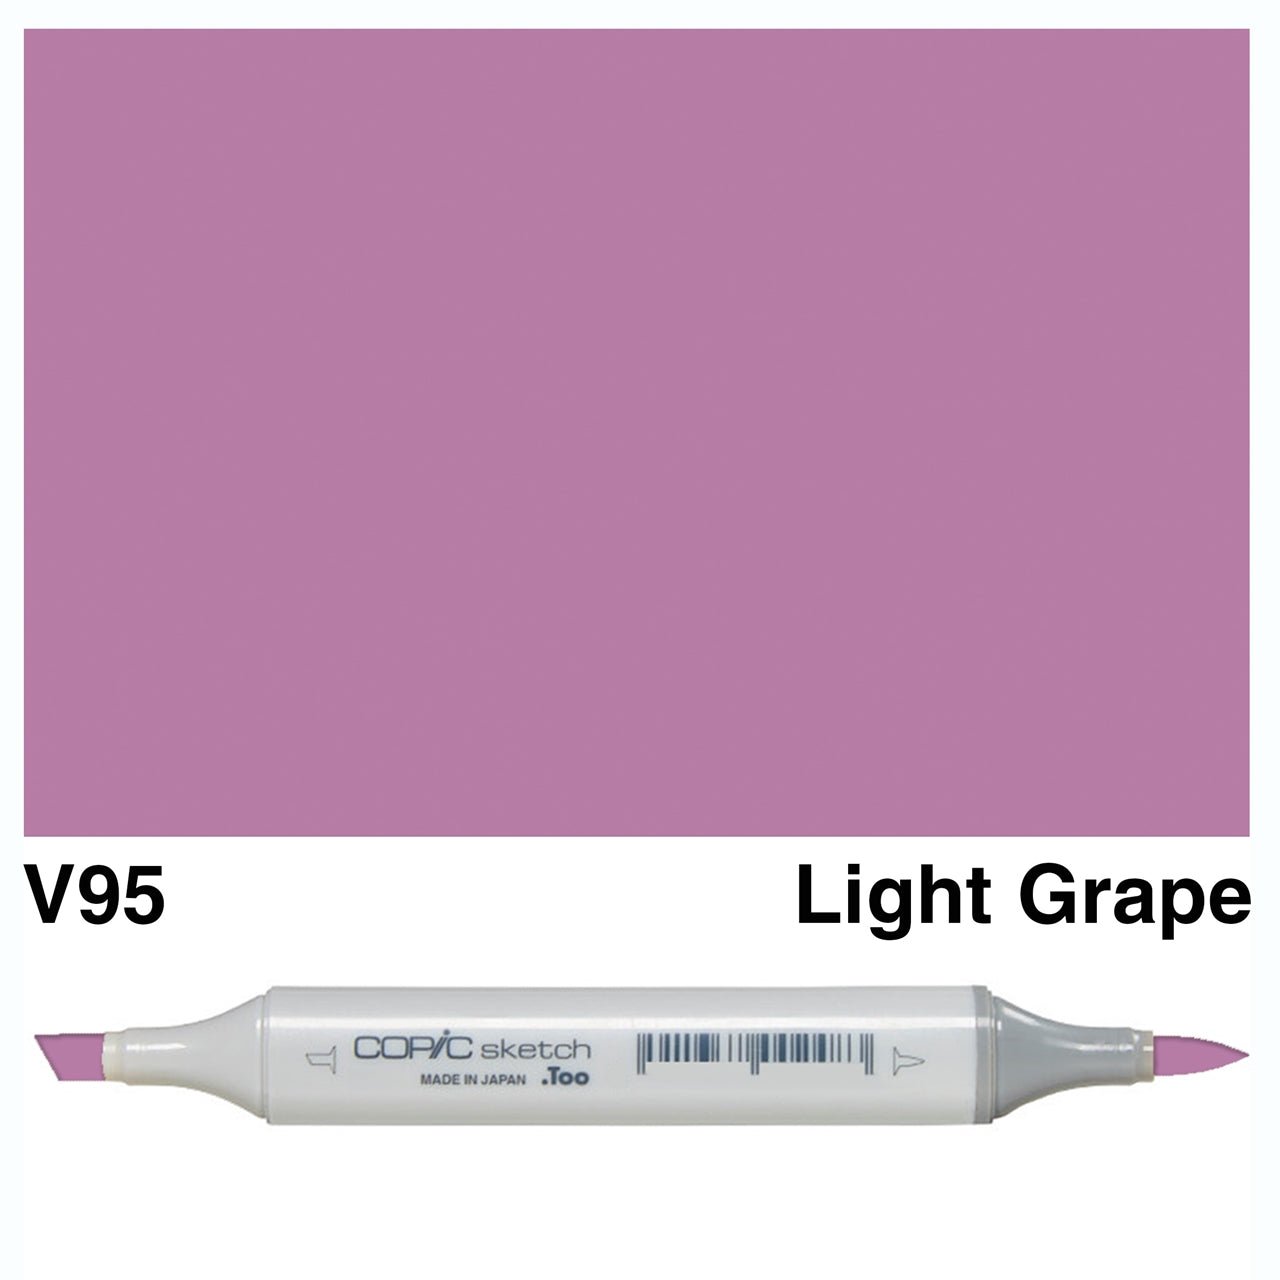 Copic Sketch V95 Light Grape - theartshop.com.au